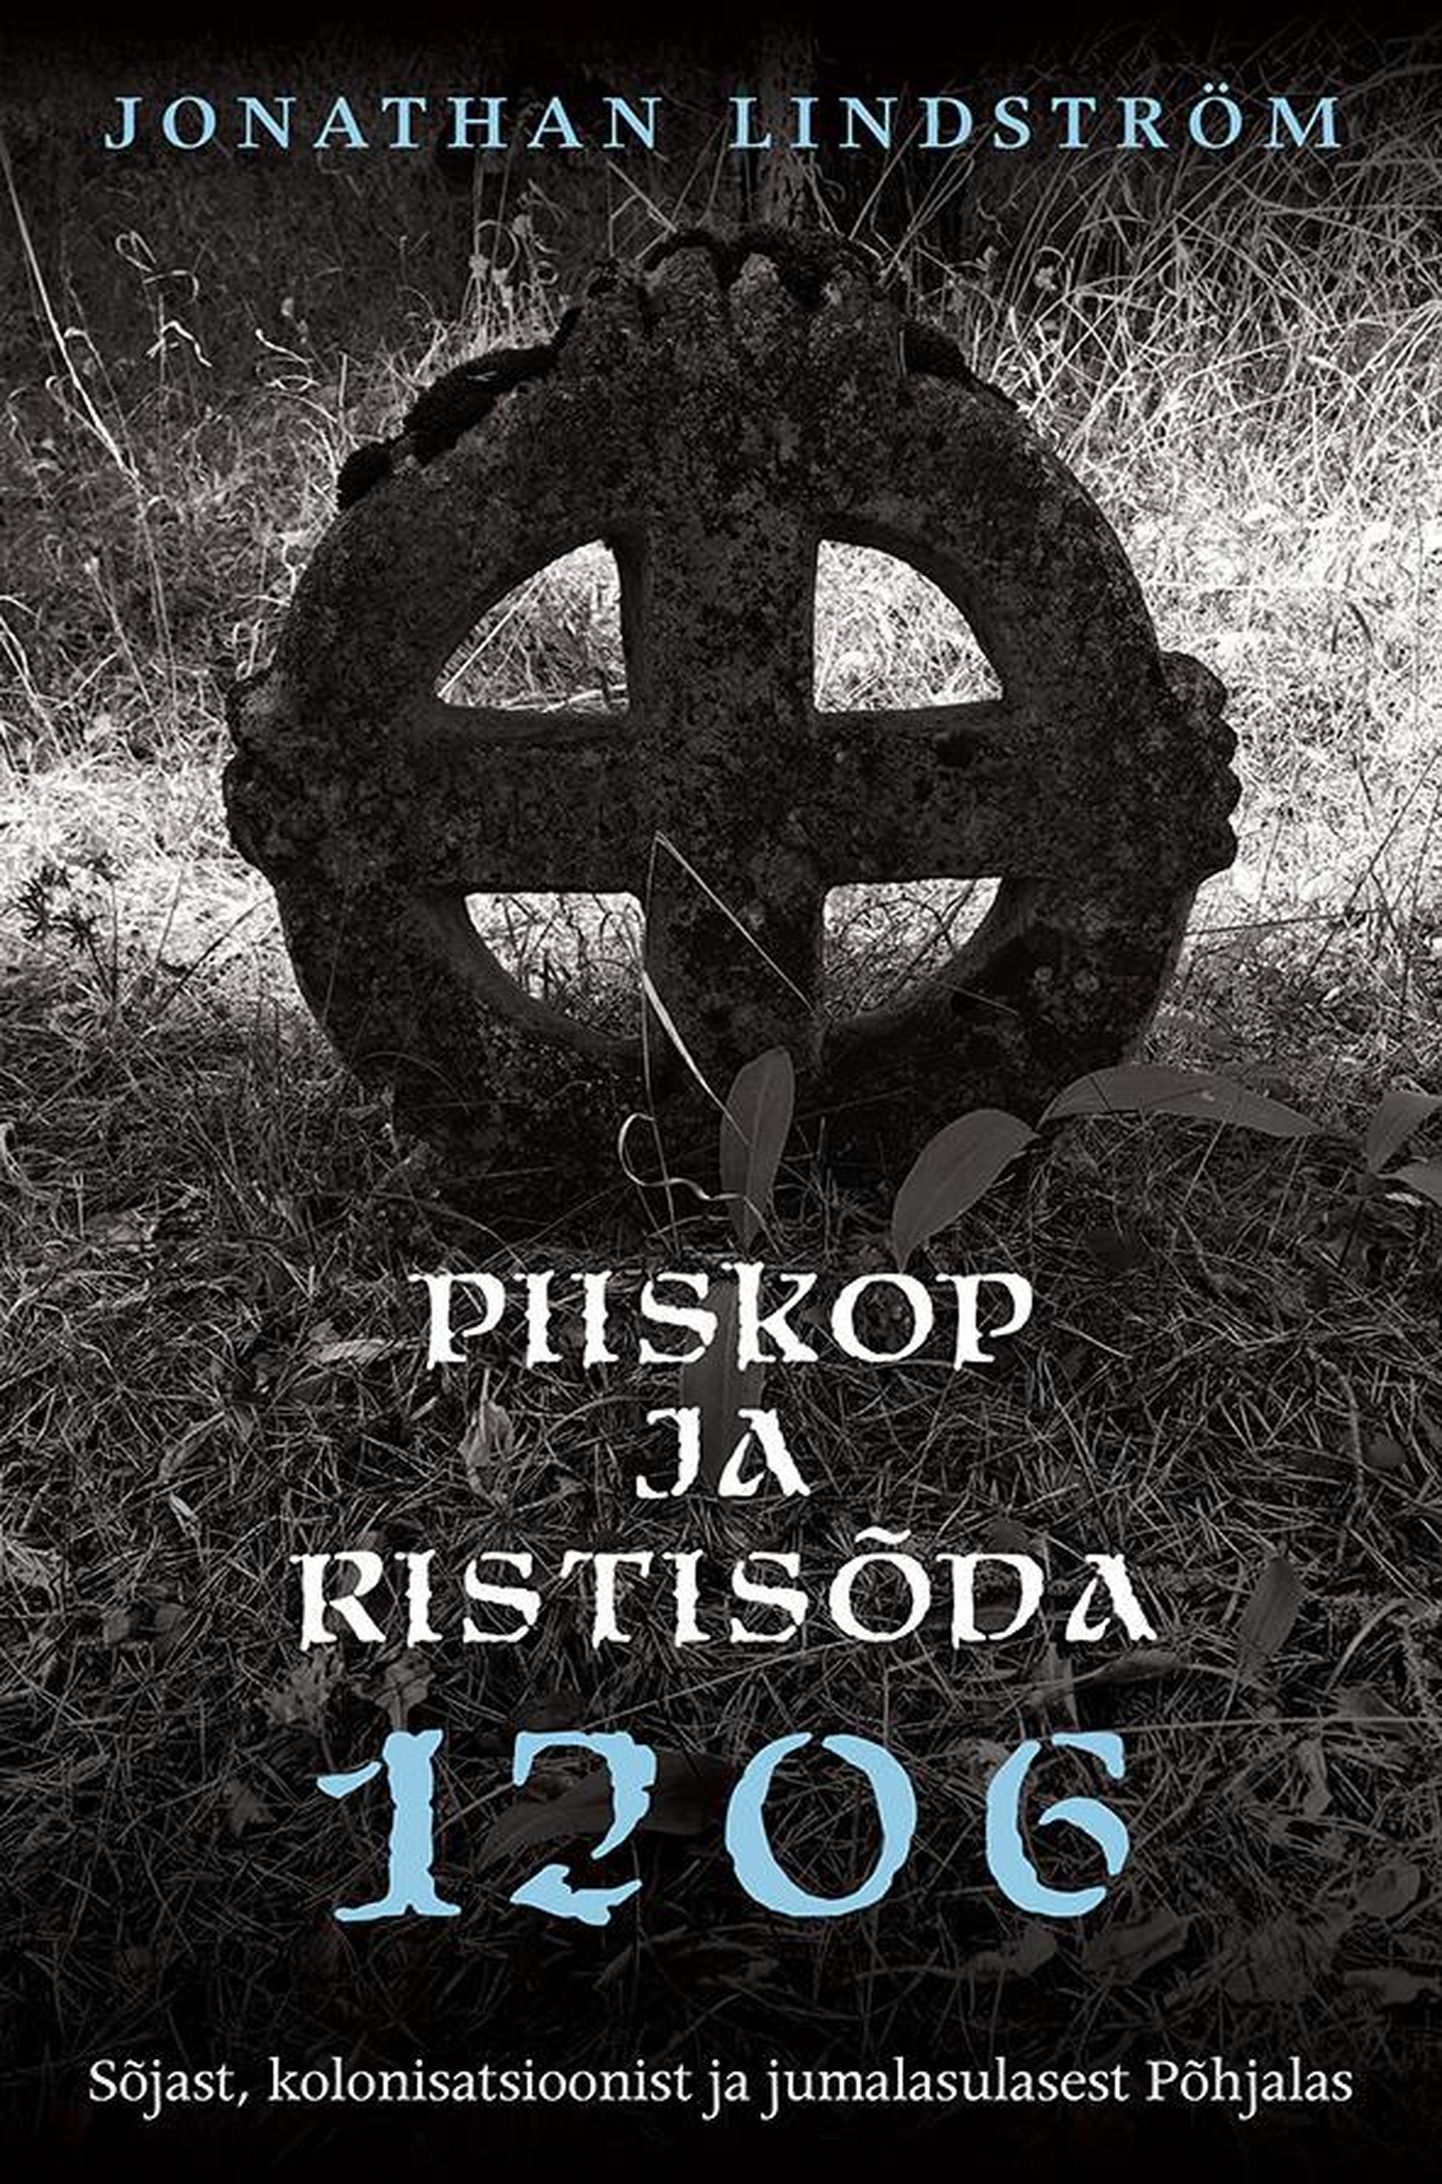 Jonathan Lindström, «Piiskop ja ristisõda 1206: Sõjast, kolonisatsioonist ja jumalasulastest Põhjalas».